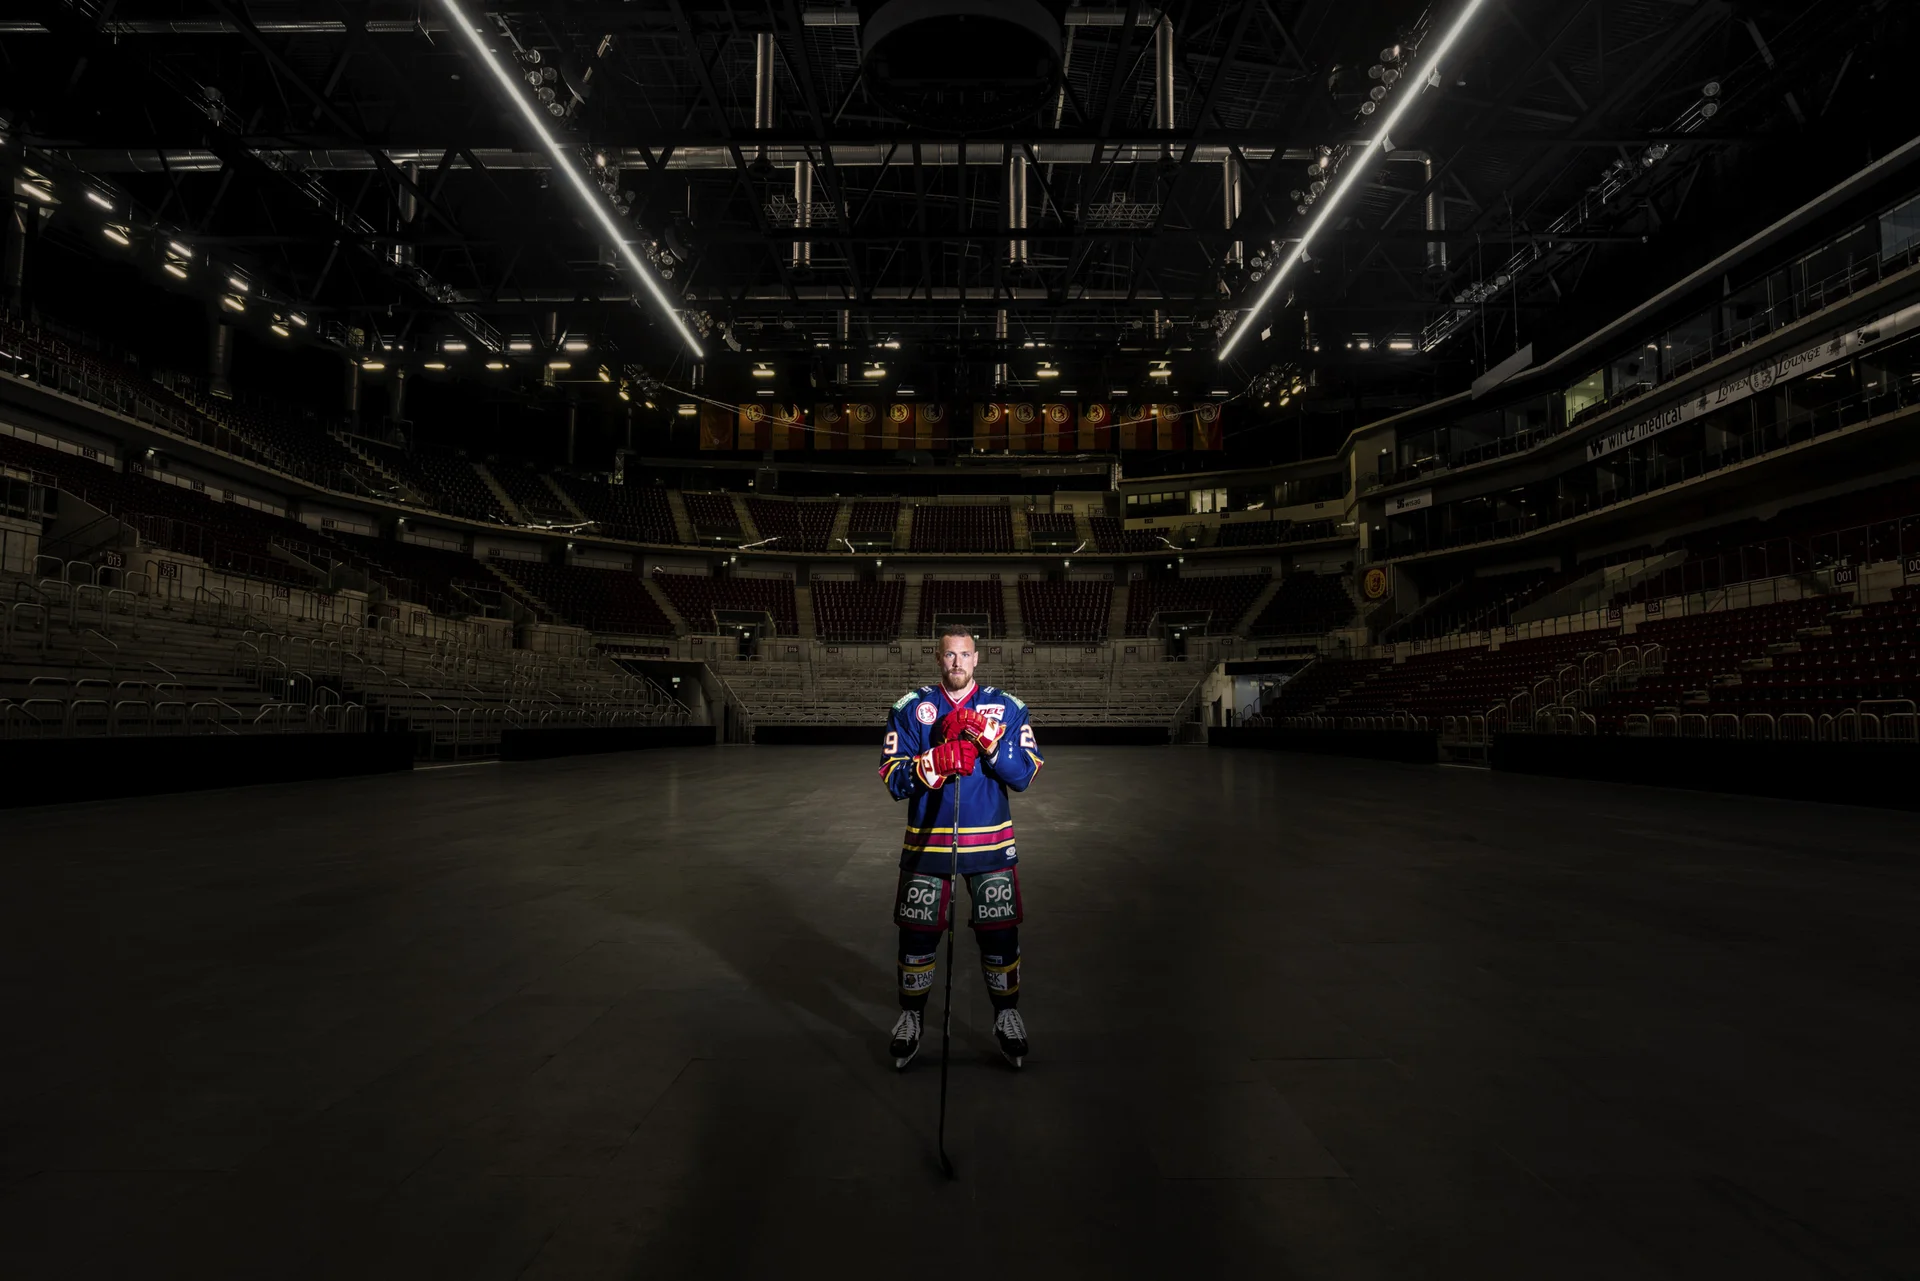 Lichtspot auf Hockyspieler in der Mitte einer leeren Eishalle